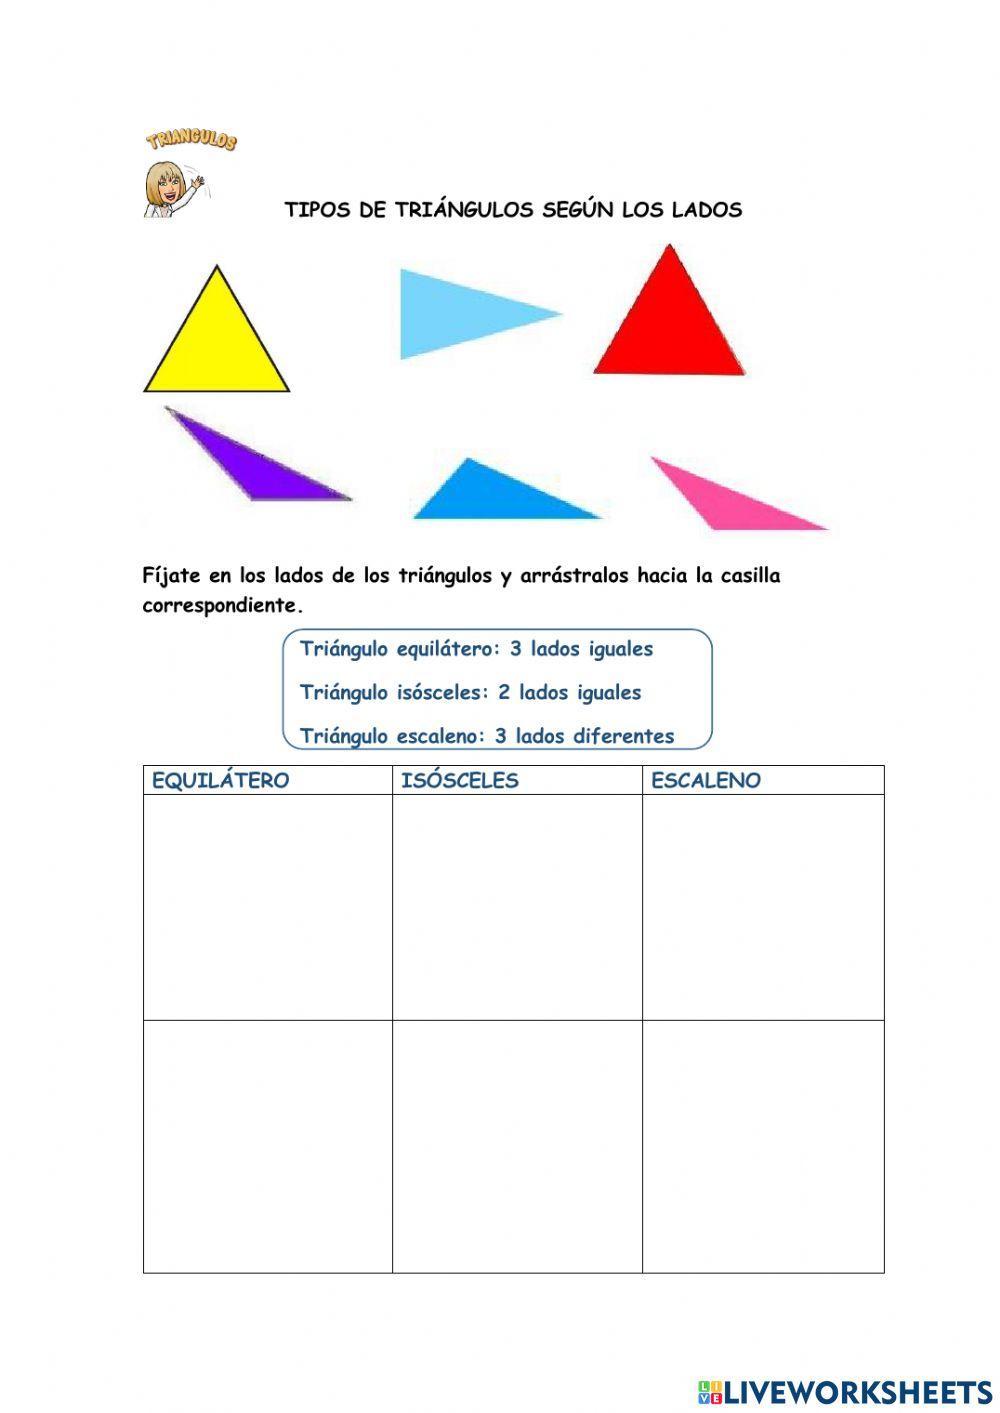 Tipos de triángulos según lados